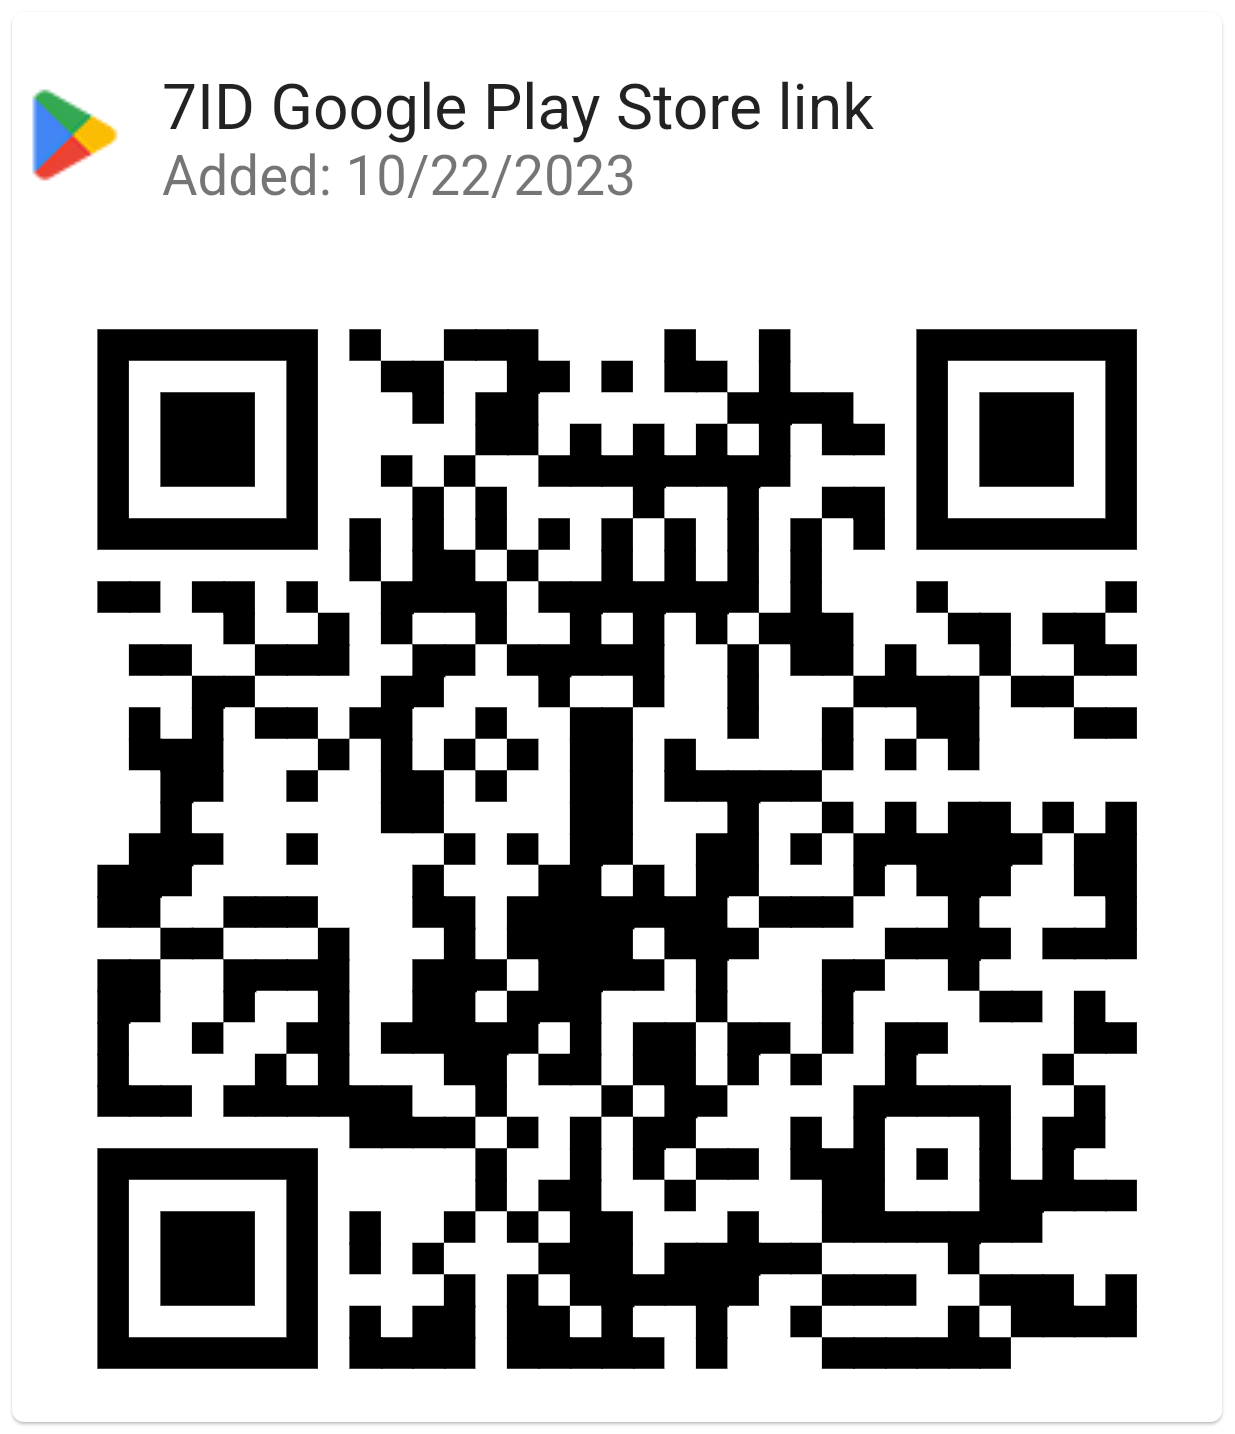 הורד את 7ID מ-Google Play